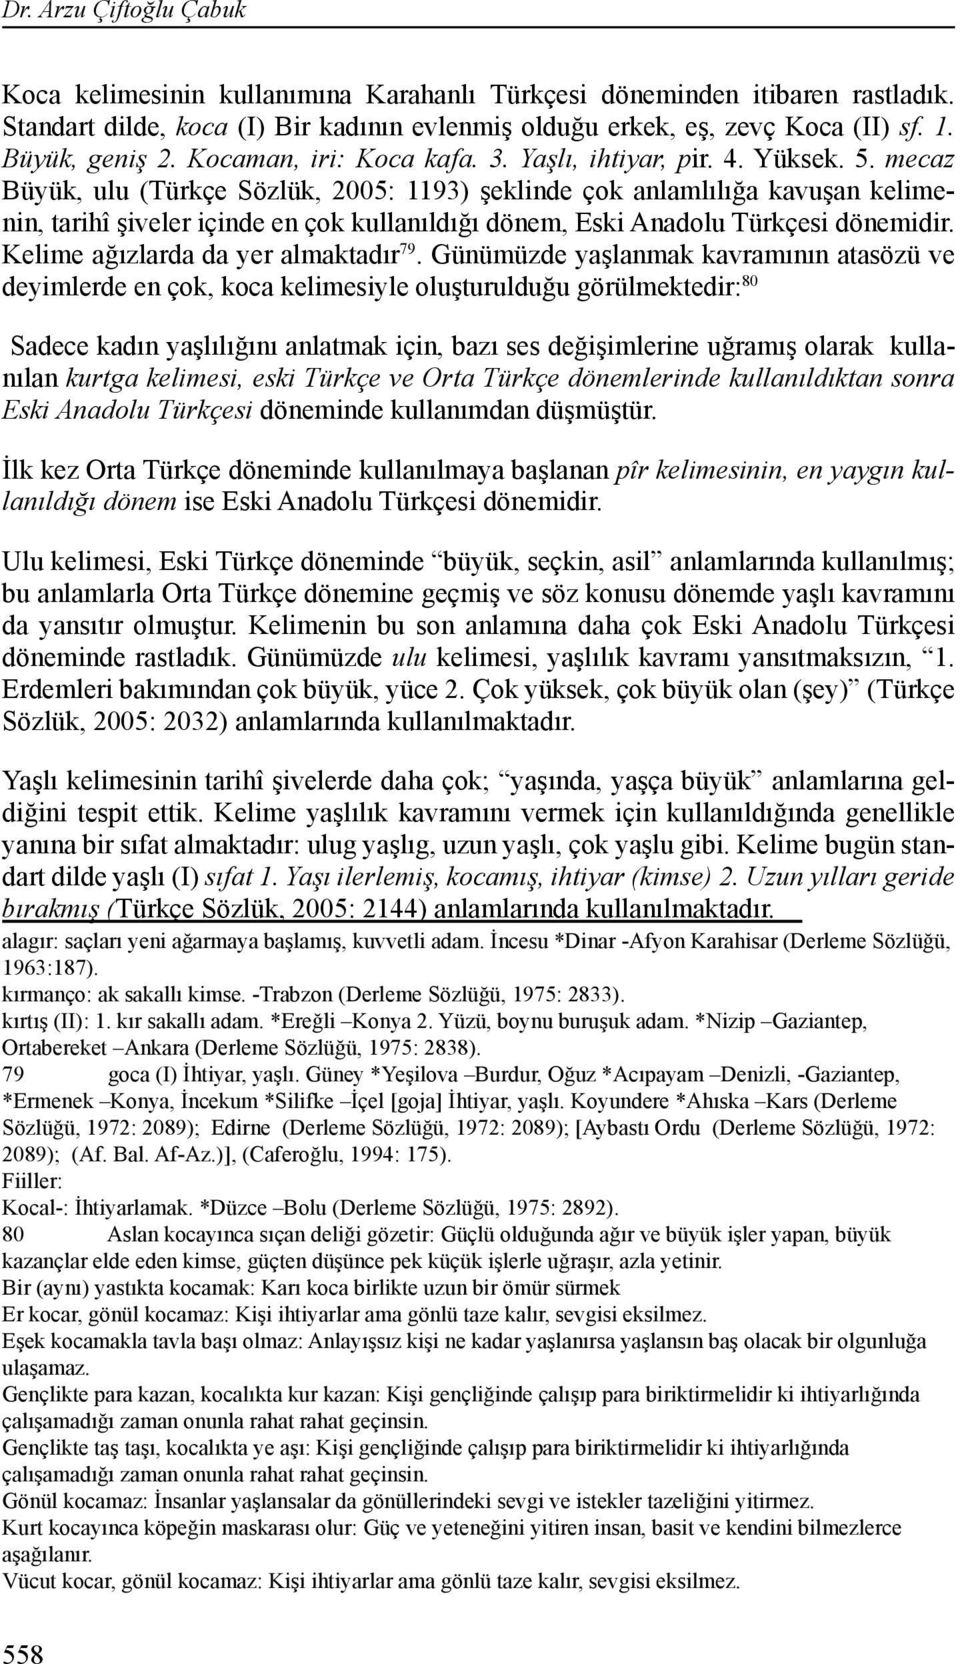 mecaz Büyük, ulu (Türkçe Sözlük, 2005: 1193) şeklinde çok anlamlılığa kavuşan kelimenin, tarihî şiveler içinde en çok kullanıldığı dönem, Eski Anadolu Türkçesi dönemidir.